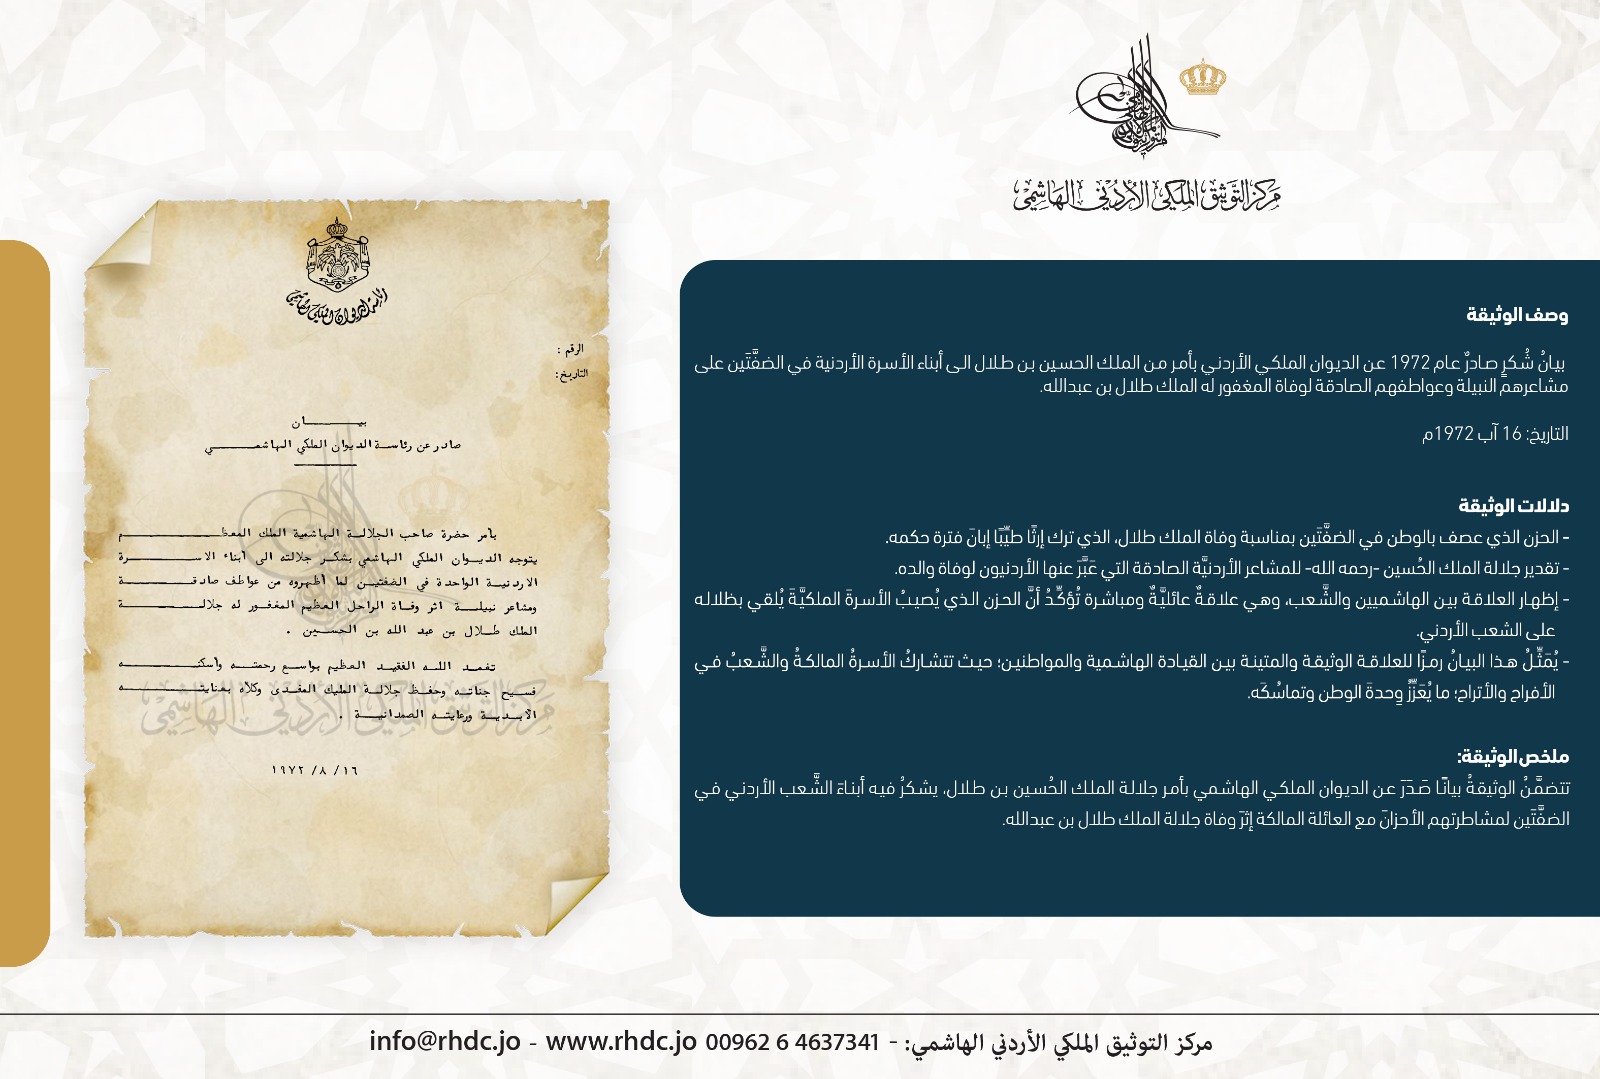 التوثيق الملكي يعرض وثيقة بمناسبة ذكرى وفاة الملك طلال بن عبدالله